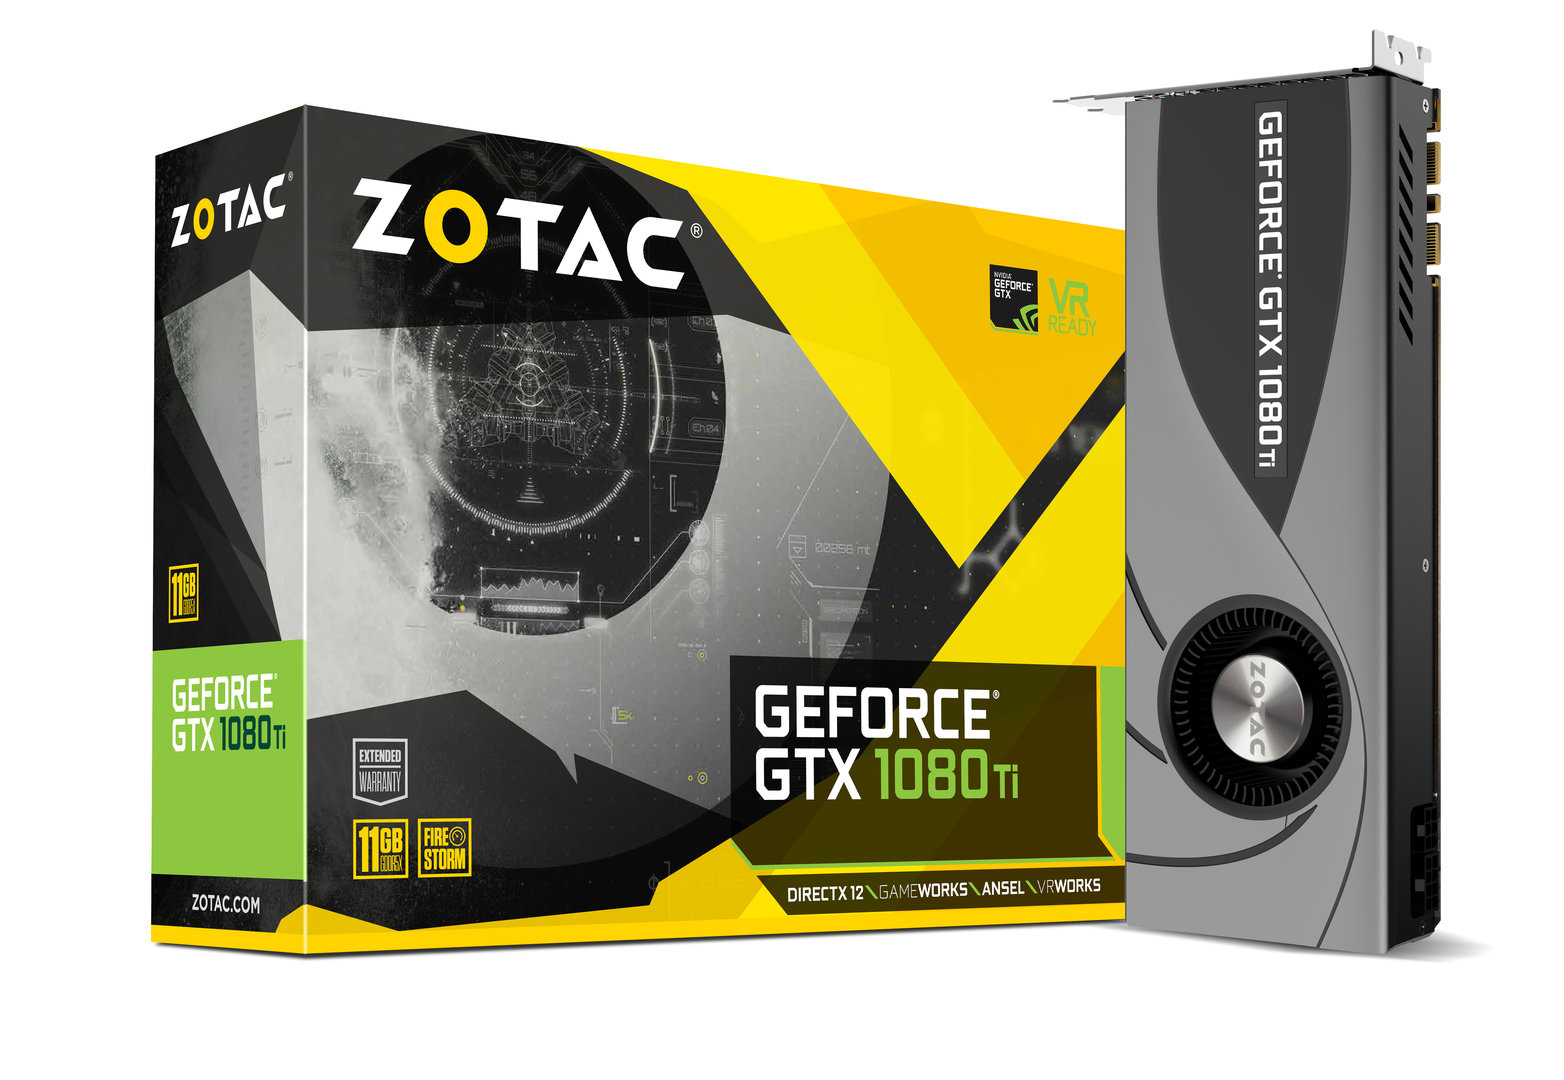 Zotac GeForce GTX 1080 Ti Blower